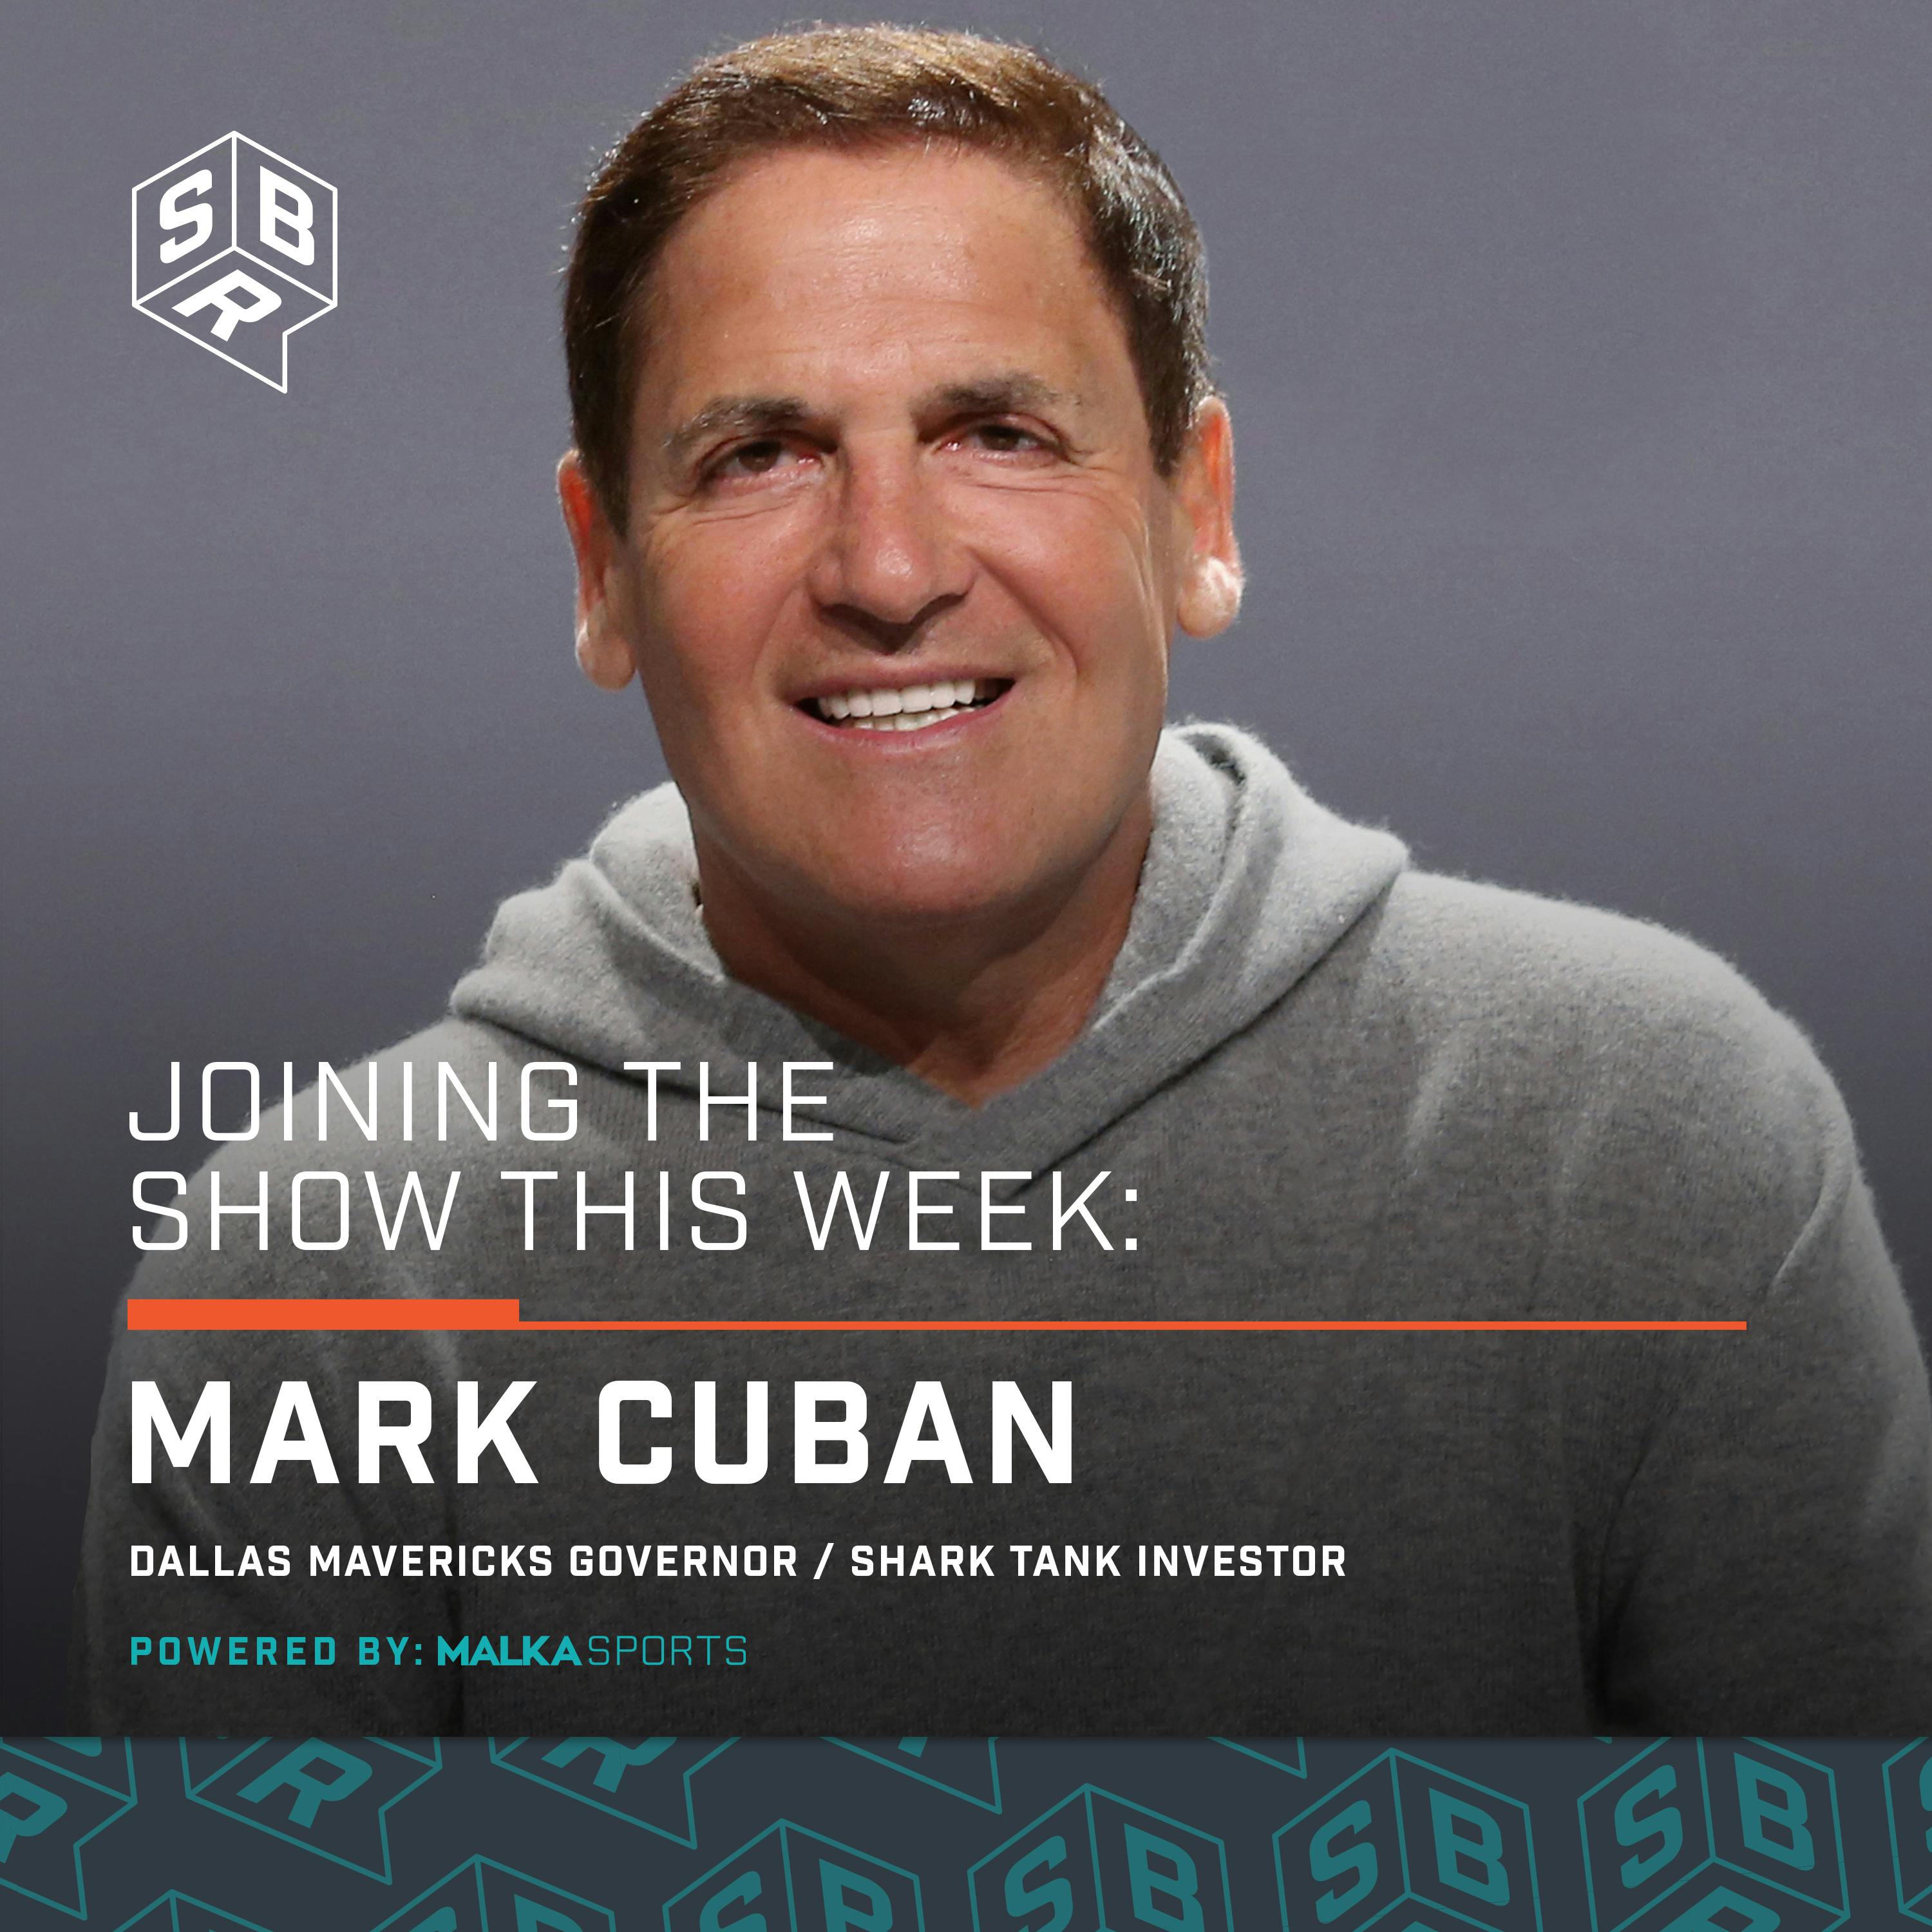 Mark Cuban, Dallas Mavericks Governor & Shark Tank Investor